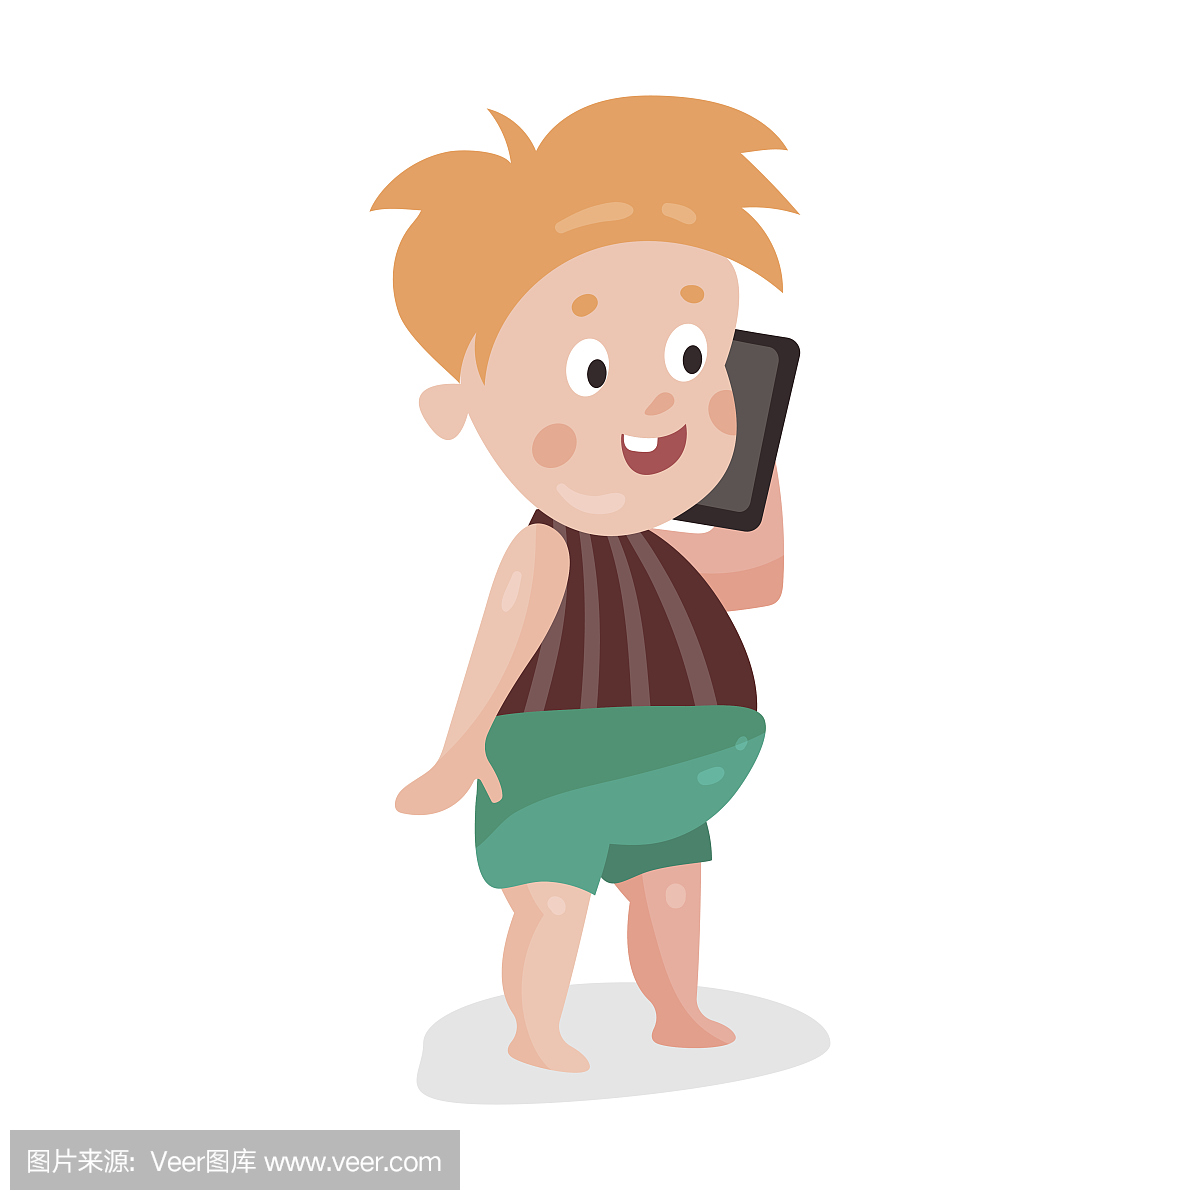 可爱的卡通红头发小孩玩智能手机五颜六色的字